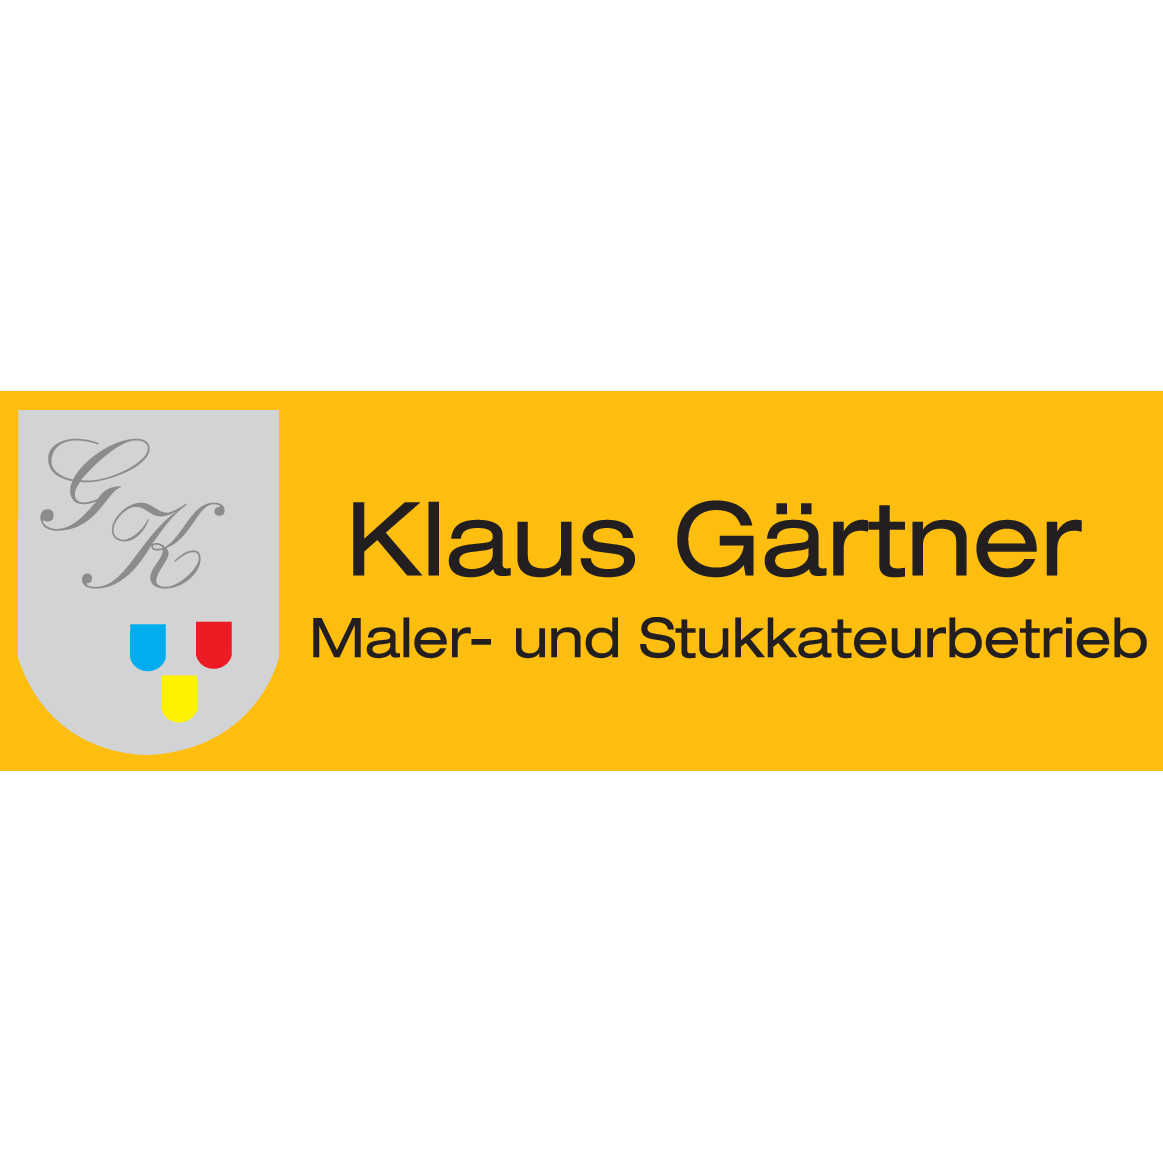 Malerbetrieb Gärtner in Neustadt bei Coburg - Logo